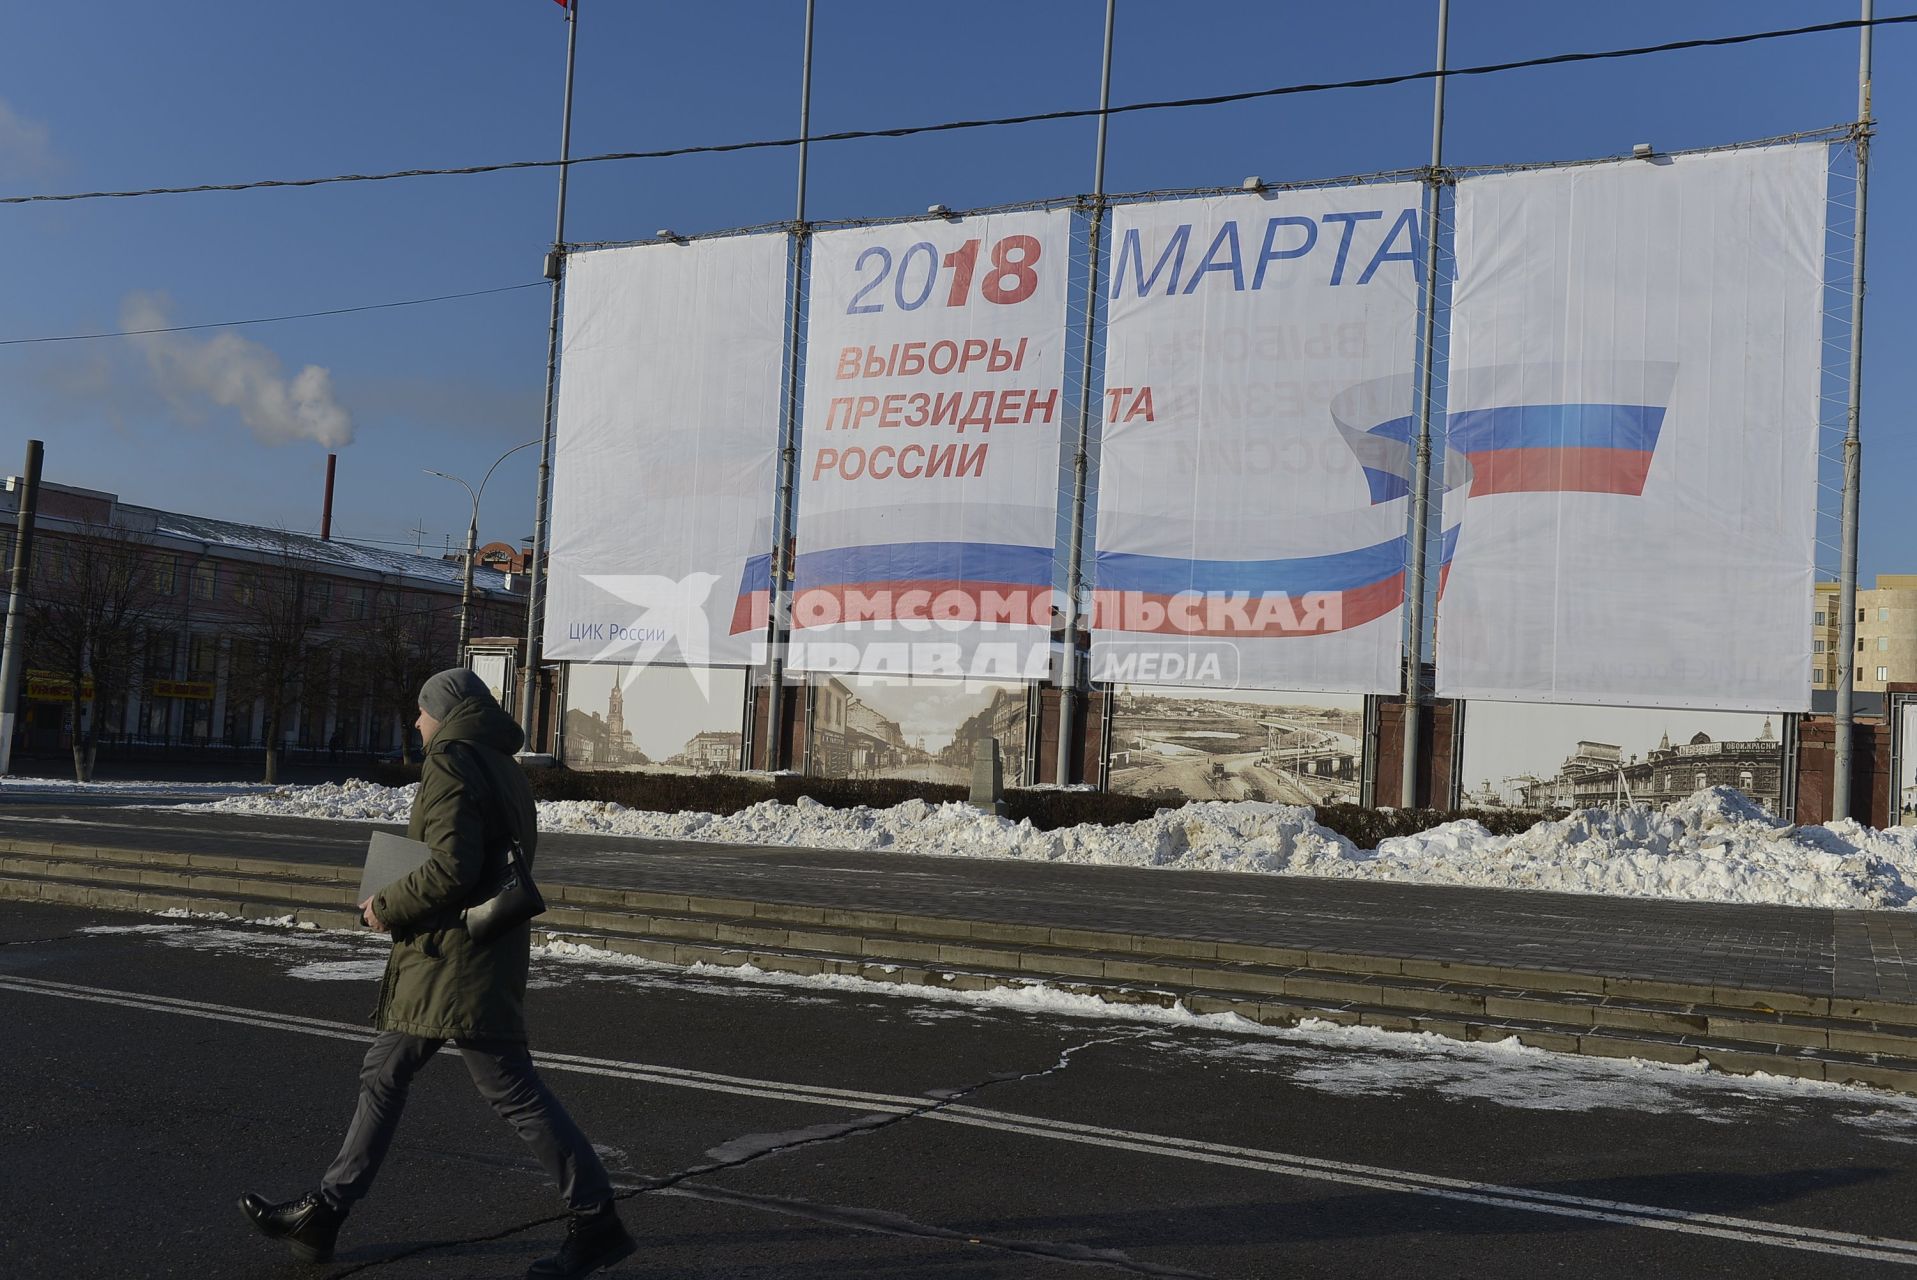 Тула. Агитационный плакат к выборам президента РФ в марте 2018 г.